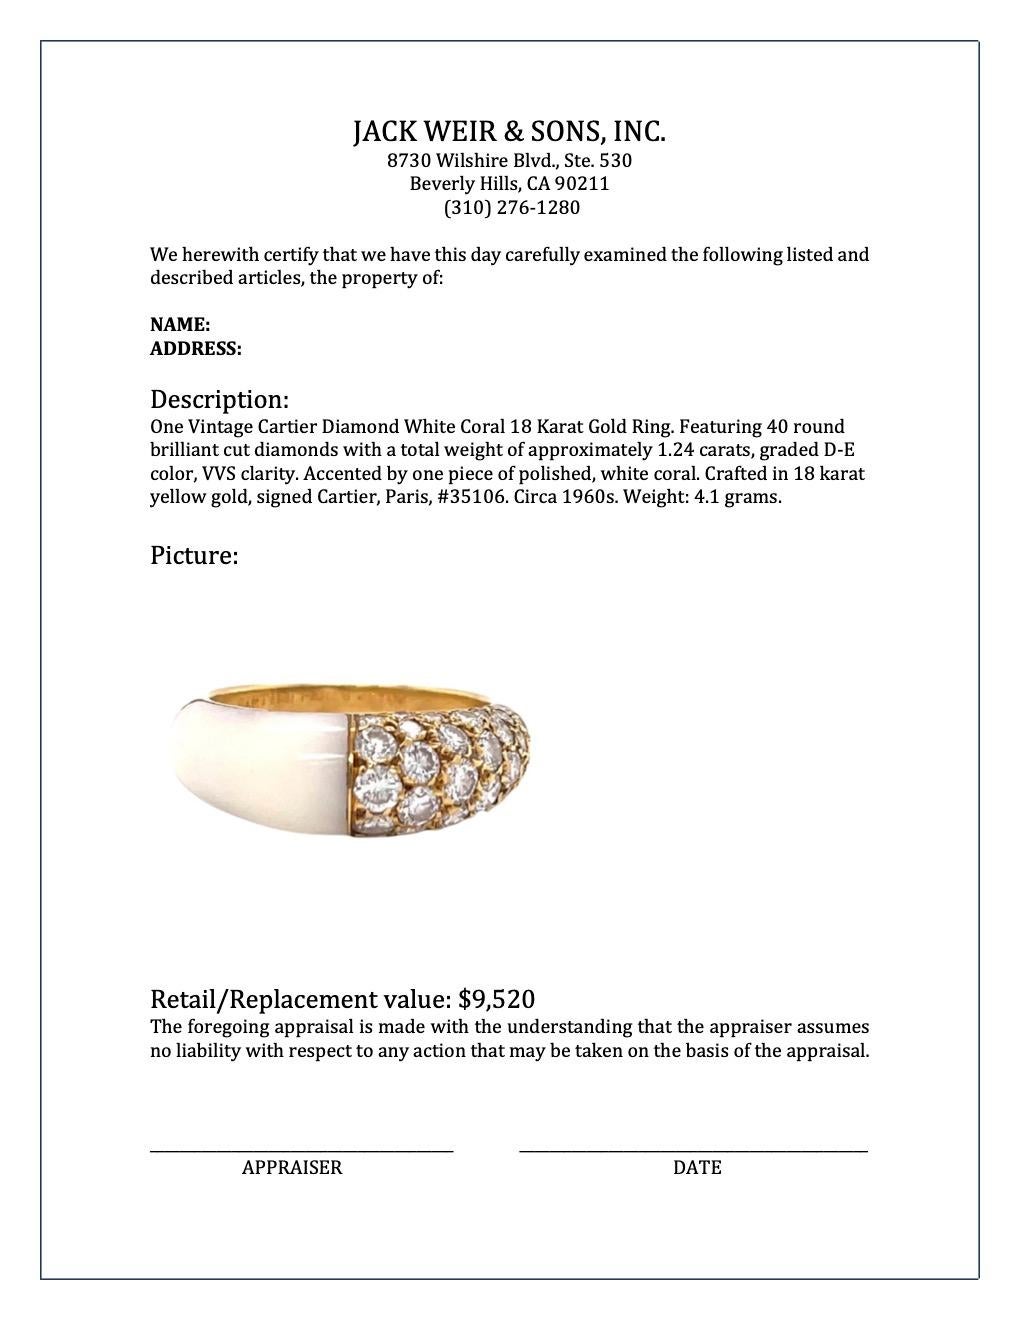 Vintage Cartier Diamond White Coral 18 Karat Gold Ring 1